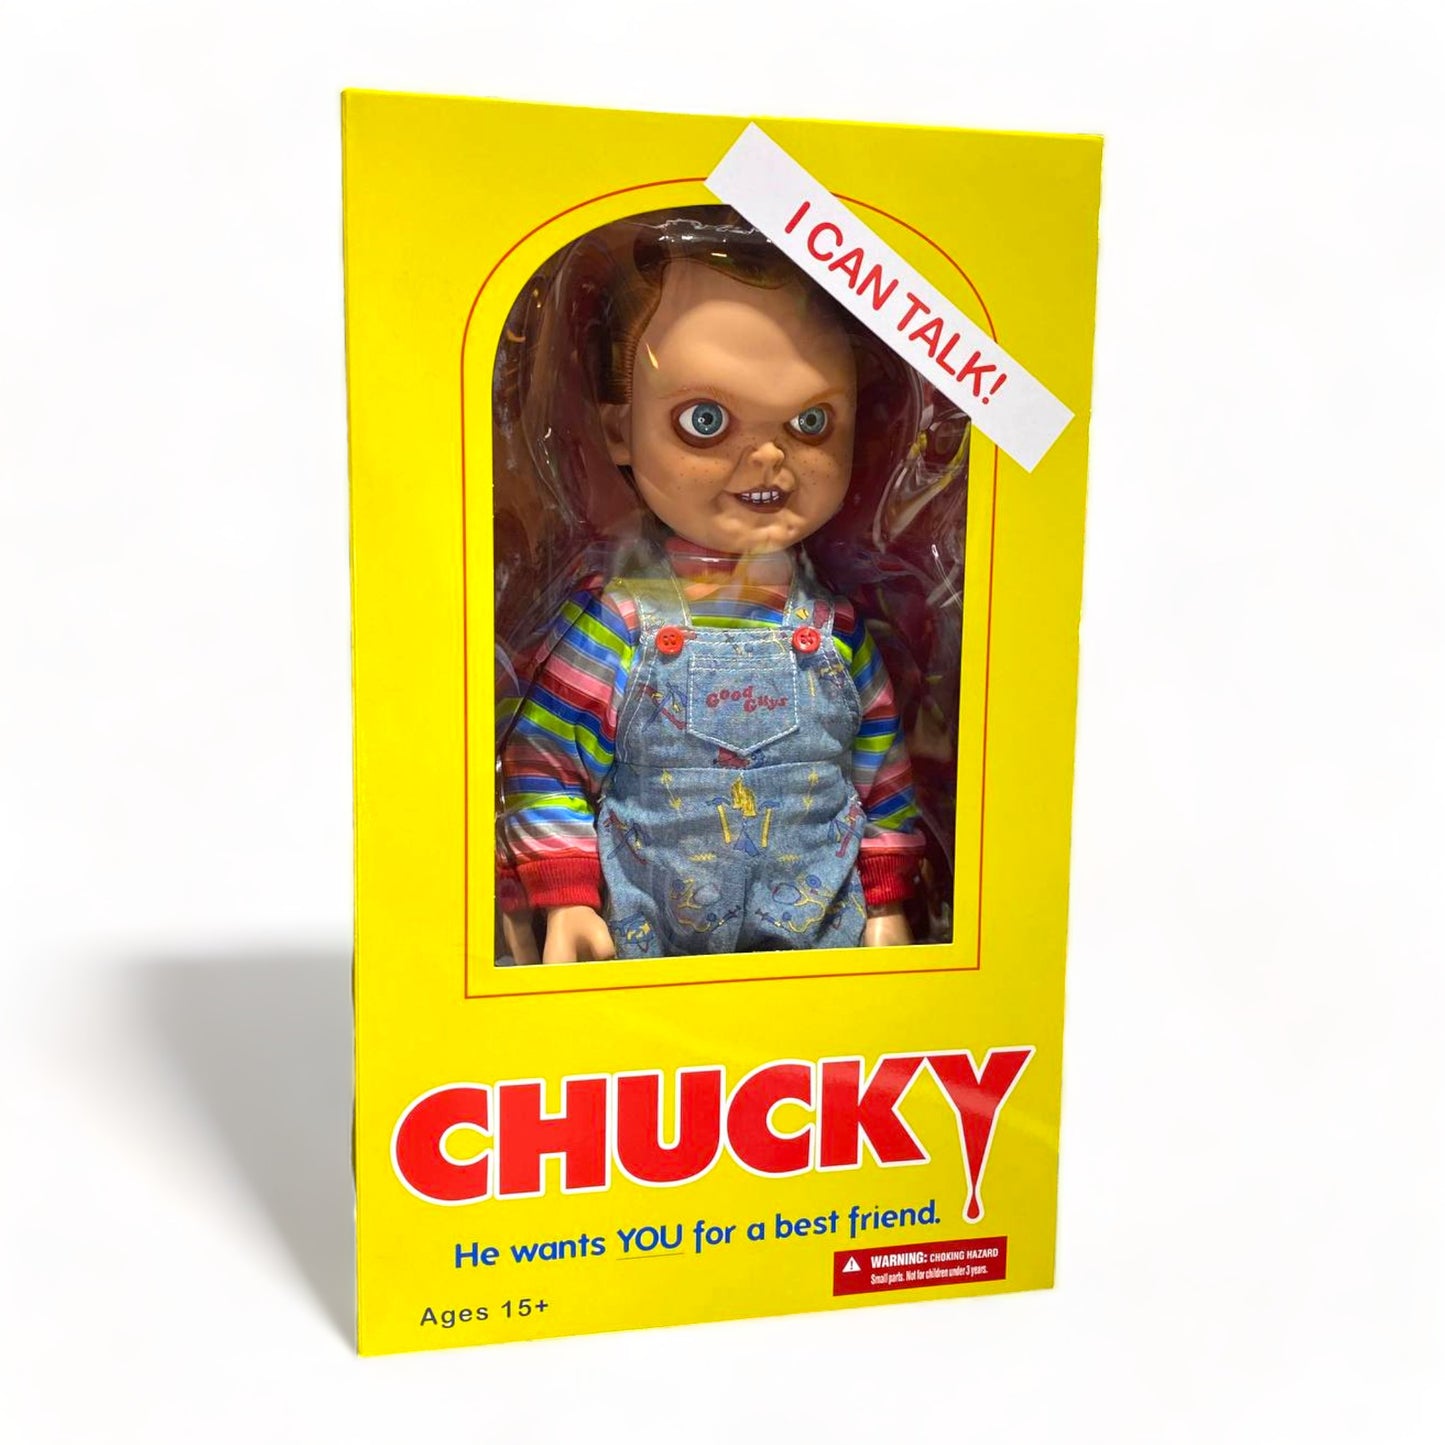 Mezco Toyz Chucky Mega Scale Figure 39cm Height, 19cm Width|Sold in Dturman.com Dubai UAE.